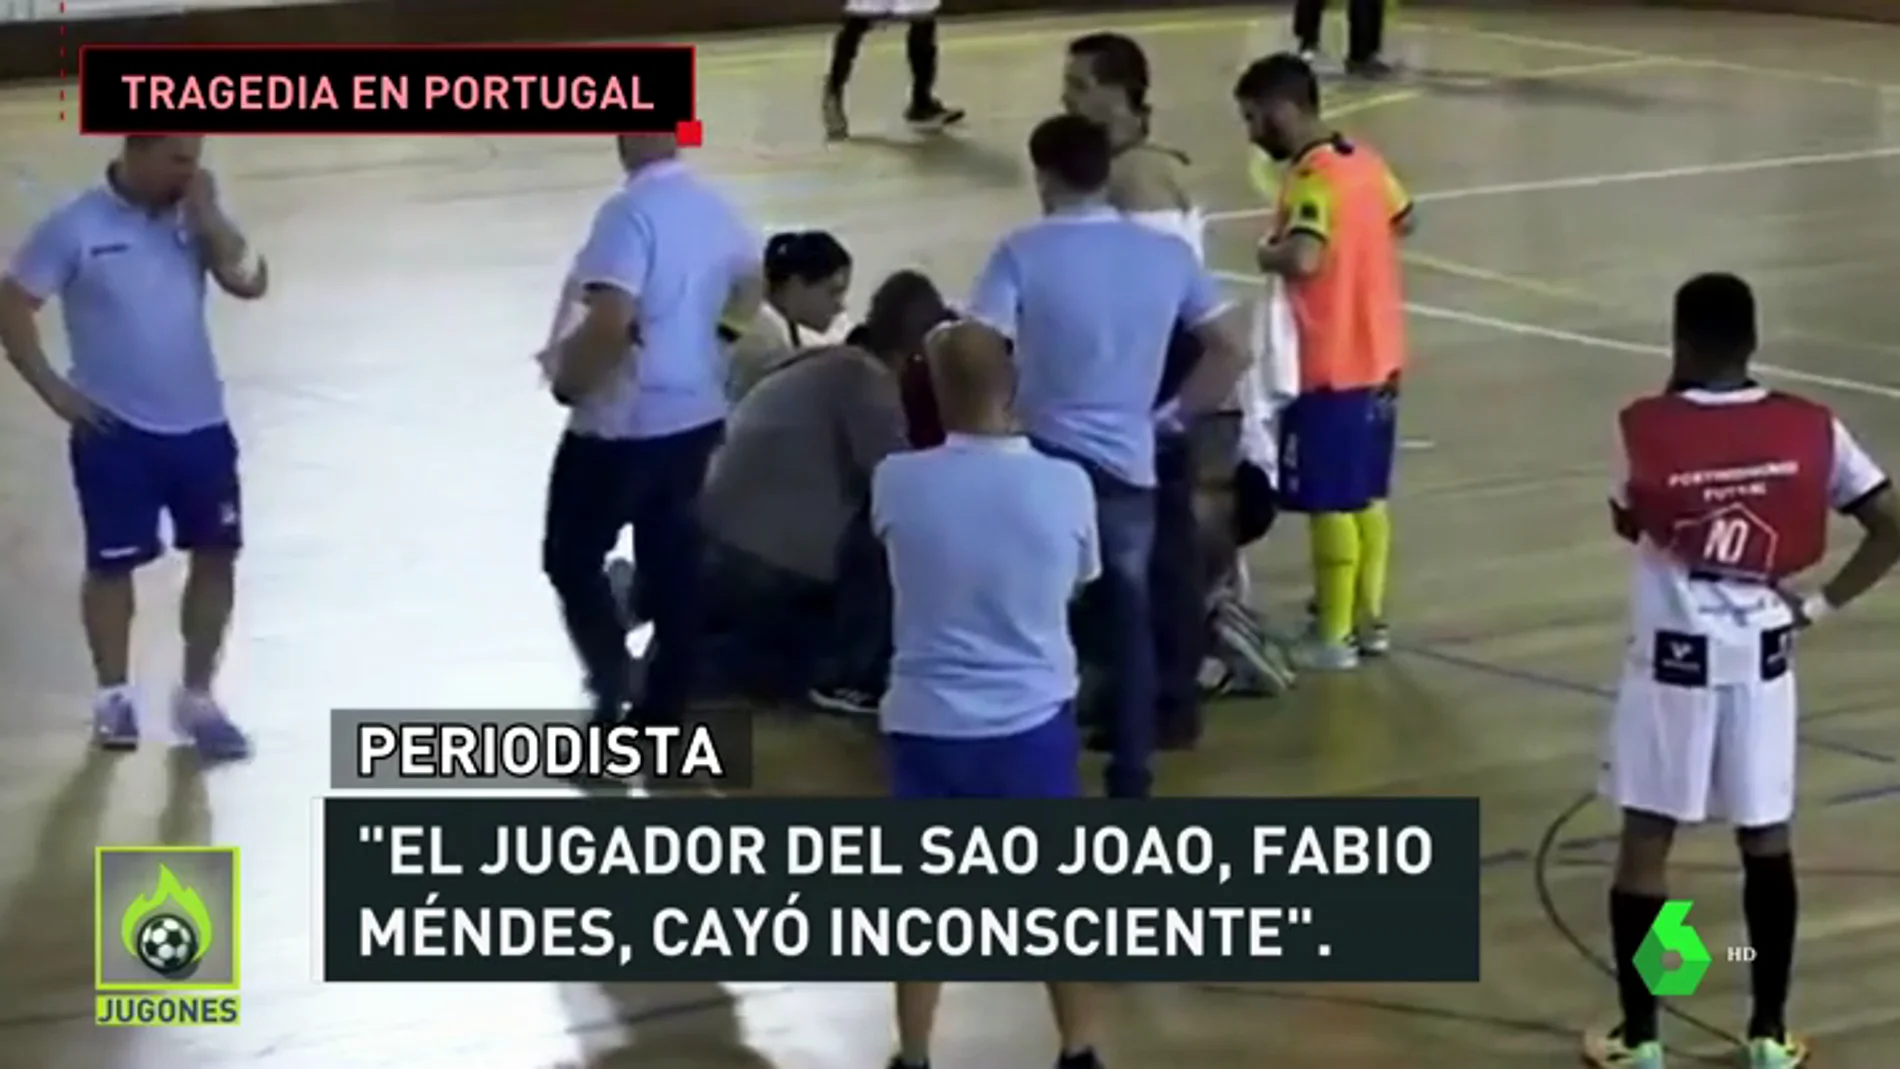 Tragedia en Portugal: Fabio Méndes, jugador de fútbol sala, muere tras caer desplomado en mitad de un partido